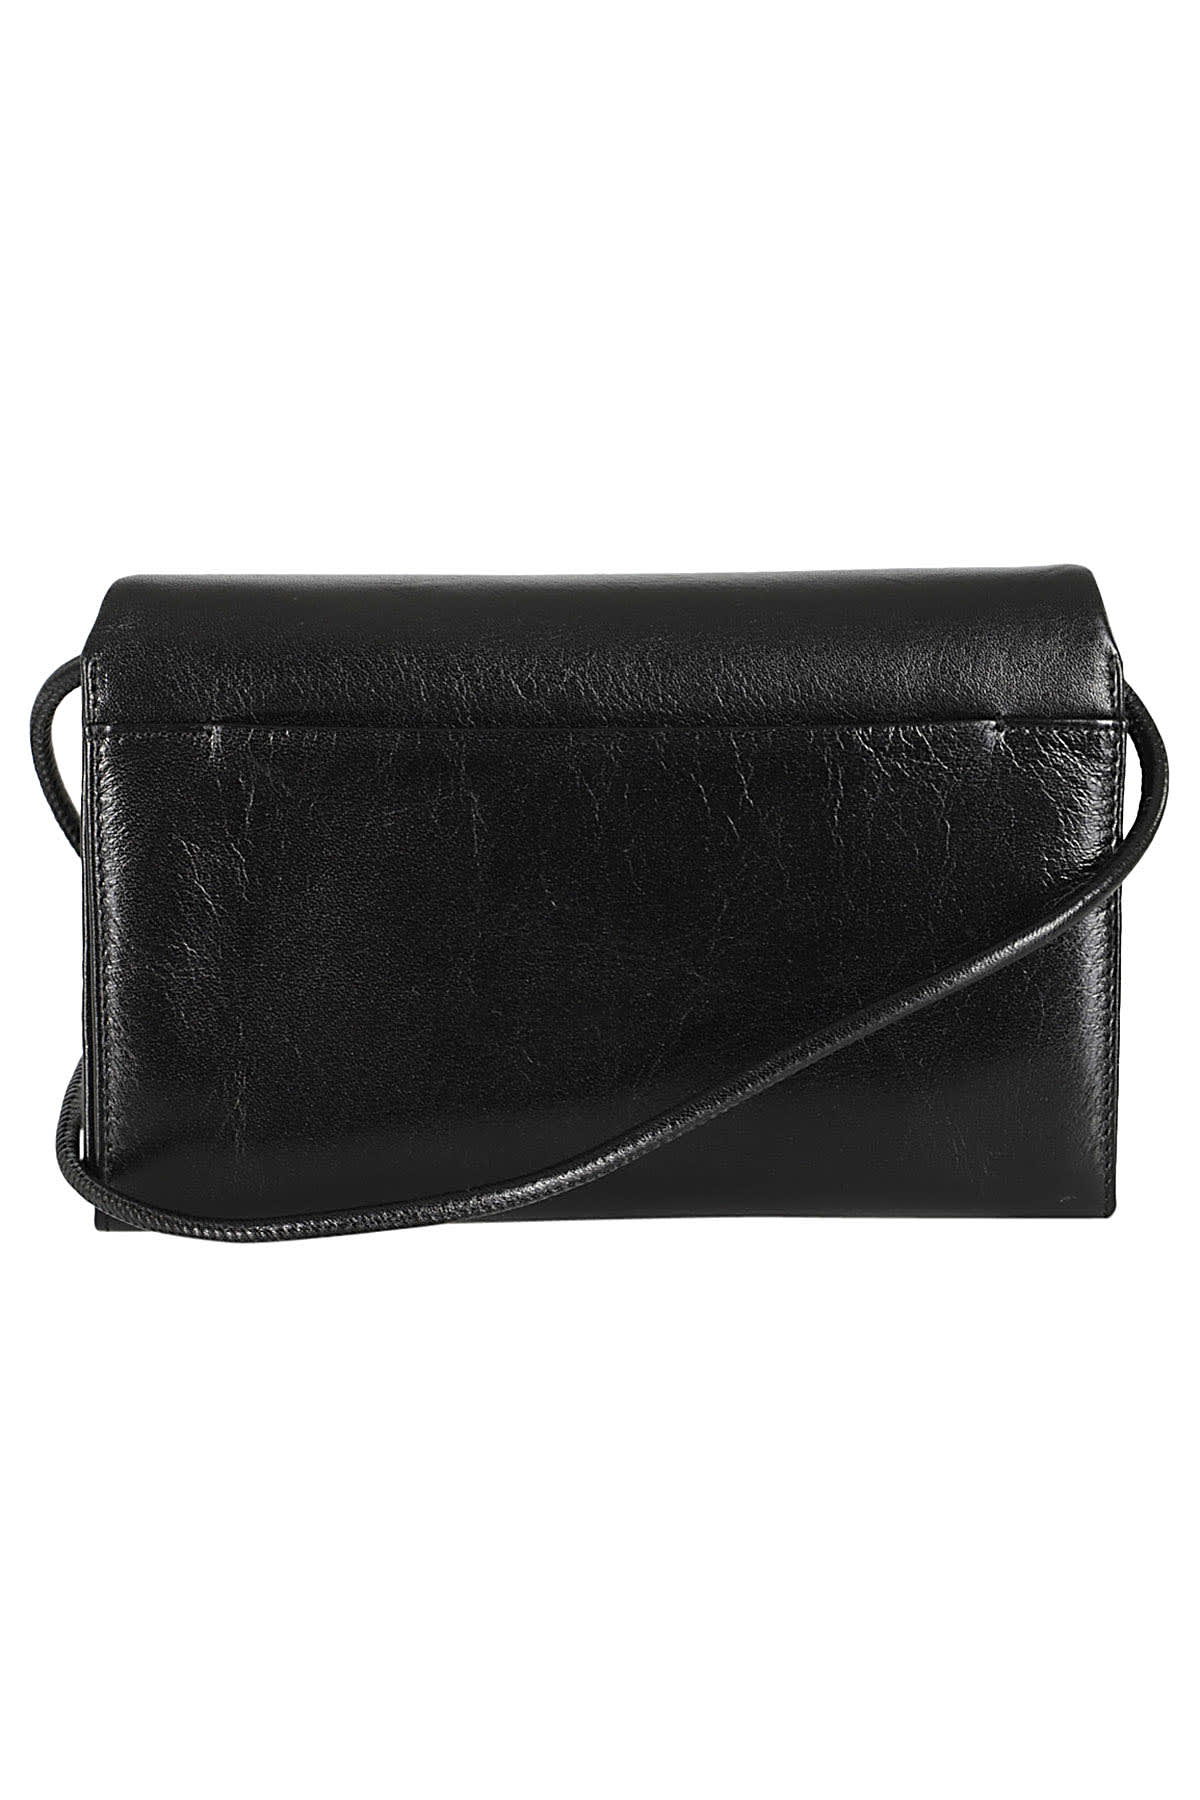 Shop Ami Alexandre Mattiussi Wallet Strap Voules Vous In Black